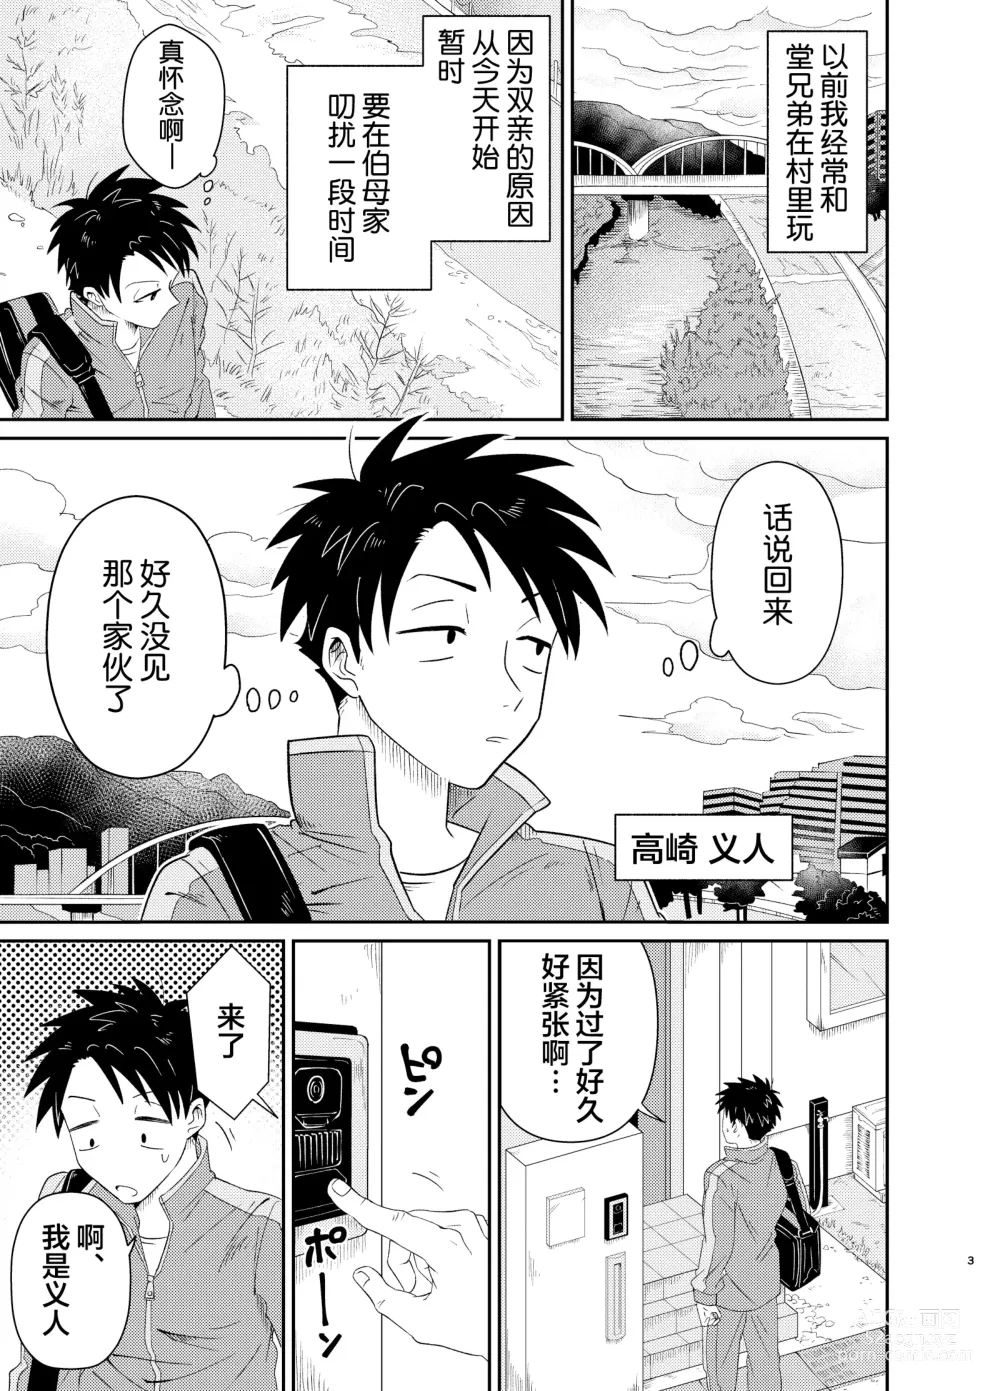 Page 3 of doujinshi Mechakucha Kawaikute Ecchi na Itoko wa Suki desu ka?